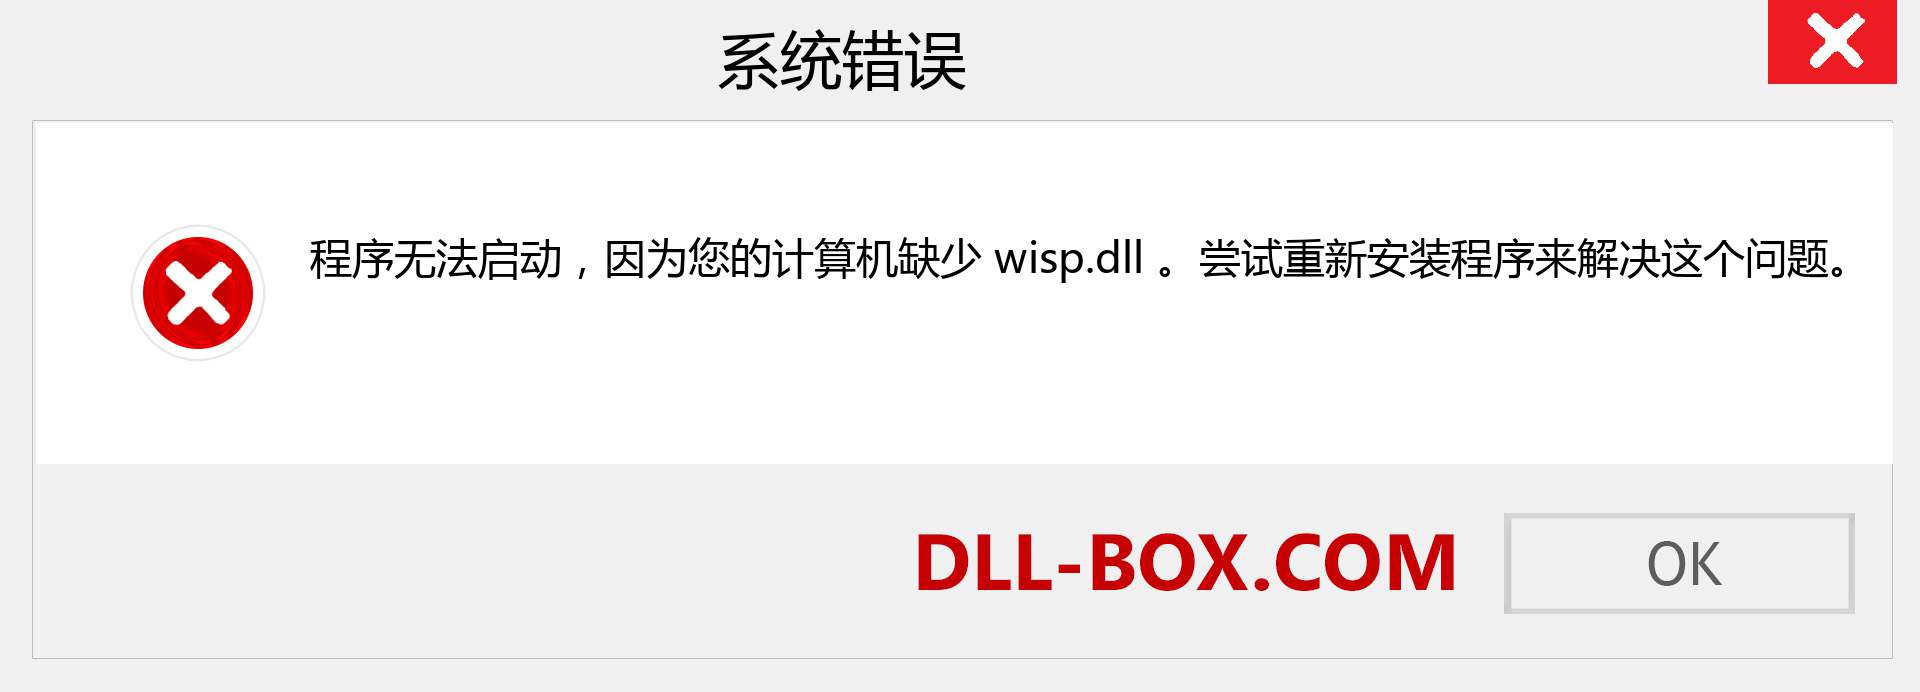 wisp.dll 文件丢失？。 适用于 Windows 7、8、10 的下载 - 修复 Windows、照片、图像上的 wisp dll 丢失错误